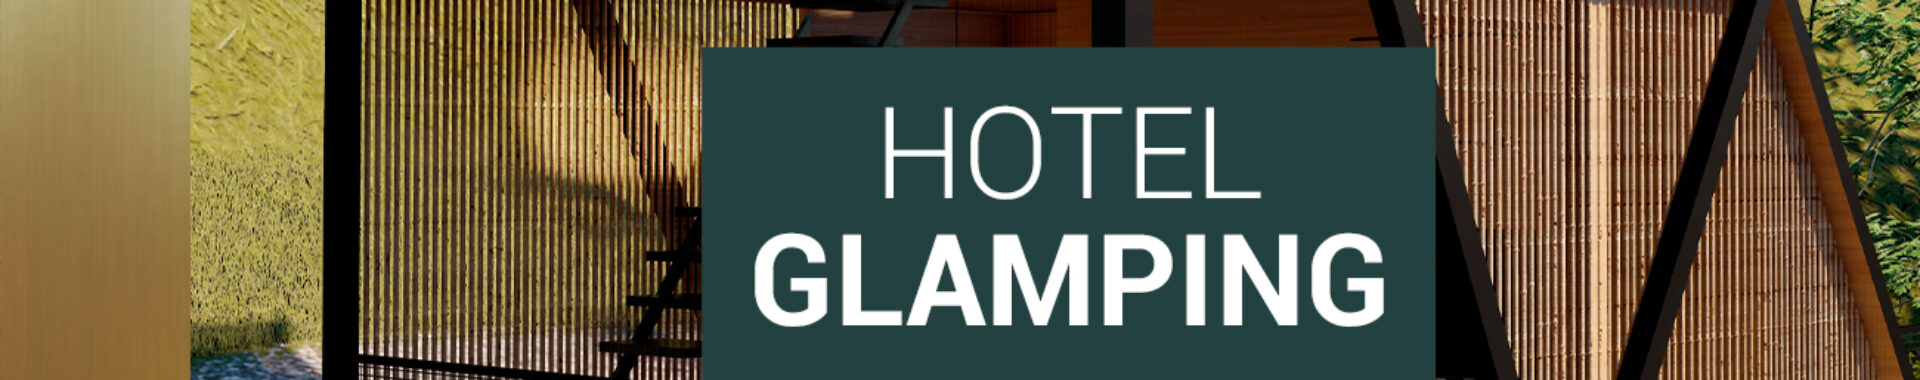 Si buscas un hotel glamping en Antioquia, en Nuthami tienes la mejor opción